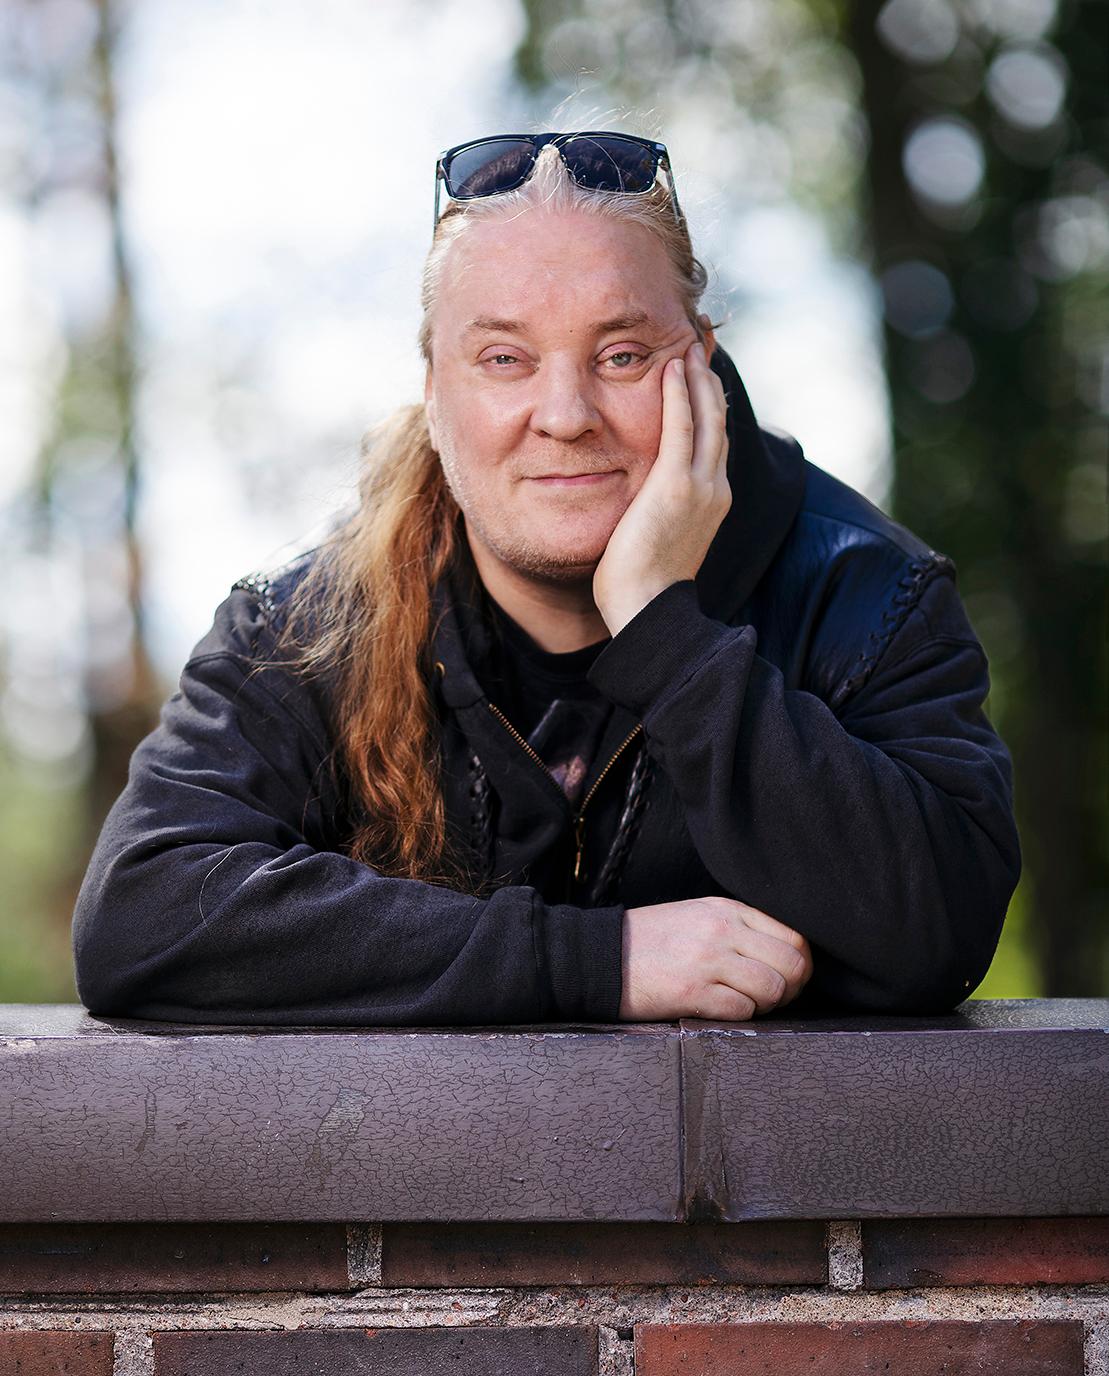 Mustiin pukeutunut pitkähiuksinen vapaaehtoistyöntekijä Jan nojaa käsiinsä Oulunkylän kirkon takapihan muuria vasten.